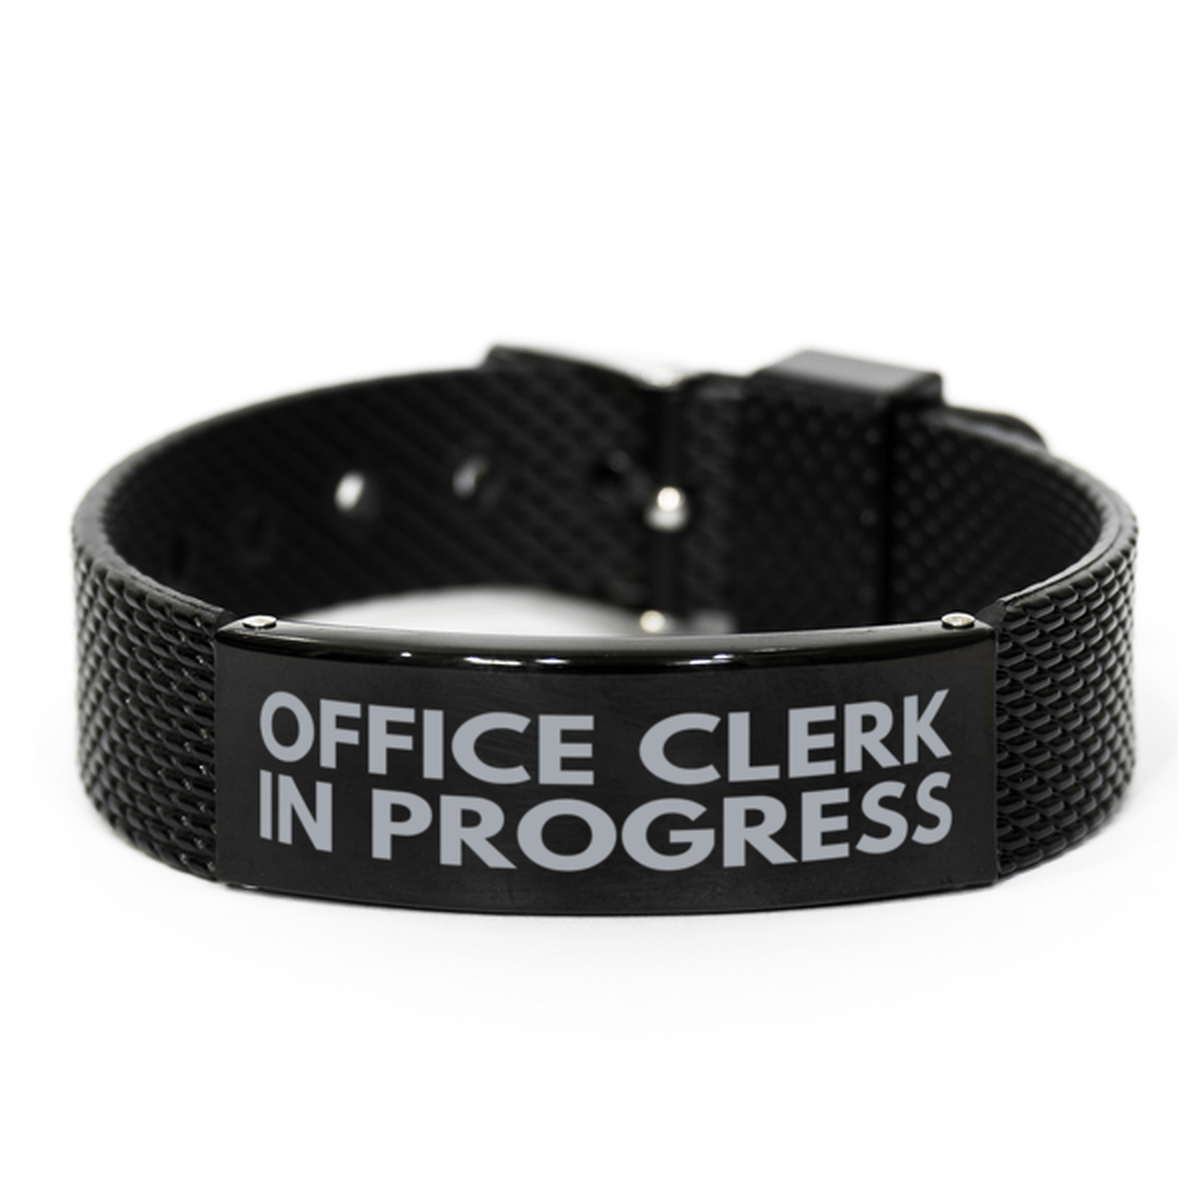 Inspirational Office Clerk Black Shark Mesh Bracelet, Office Clerk In Progress, Best Graduation Gifts for Students